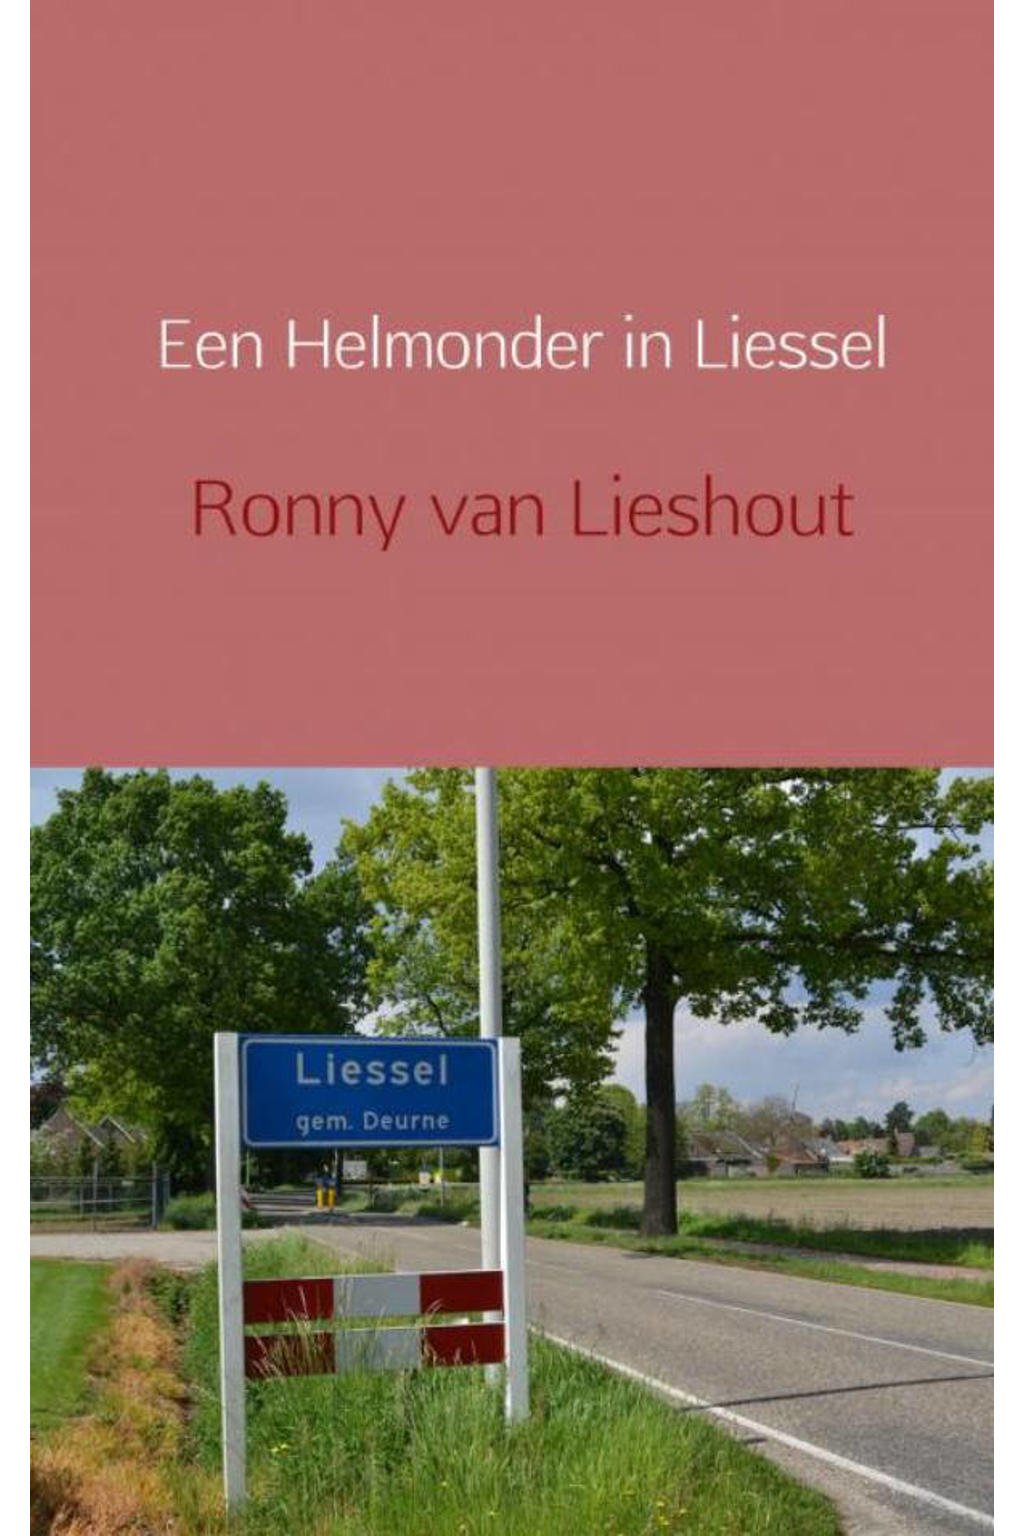 Een Helmonder in Liessel - Ronny van Lieshout